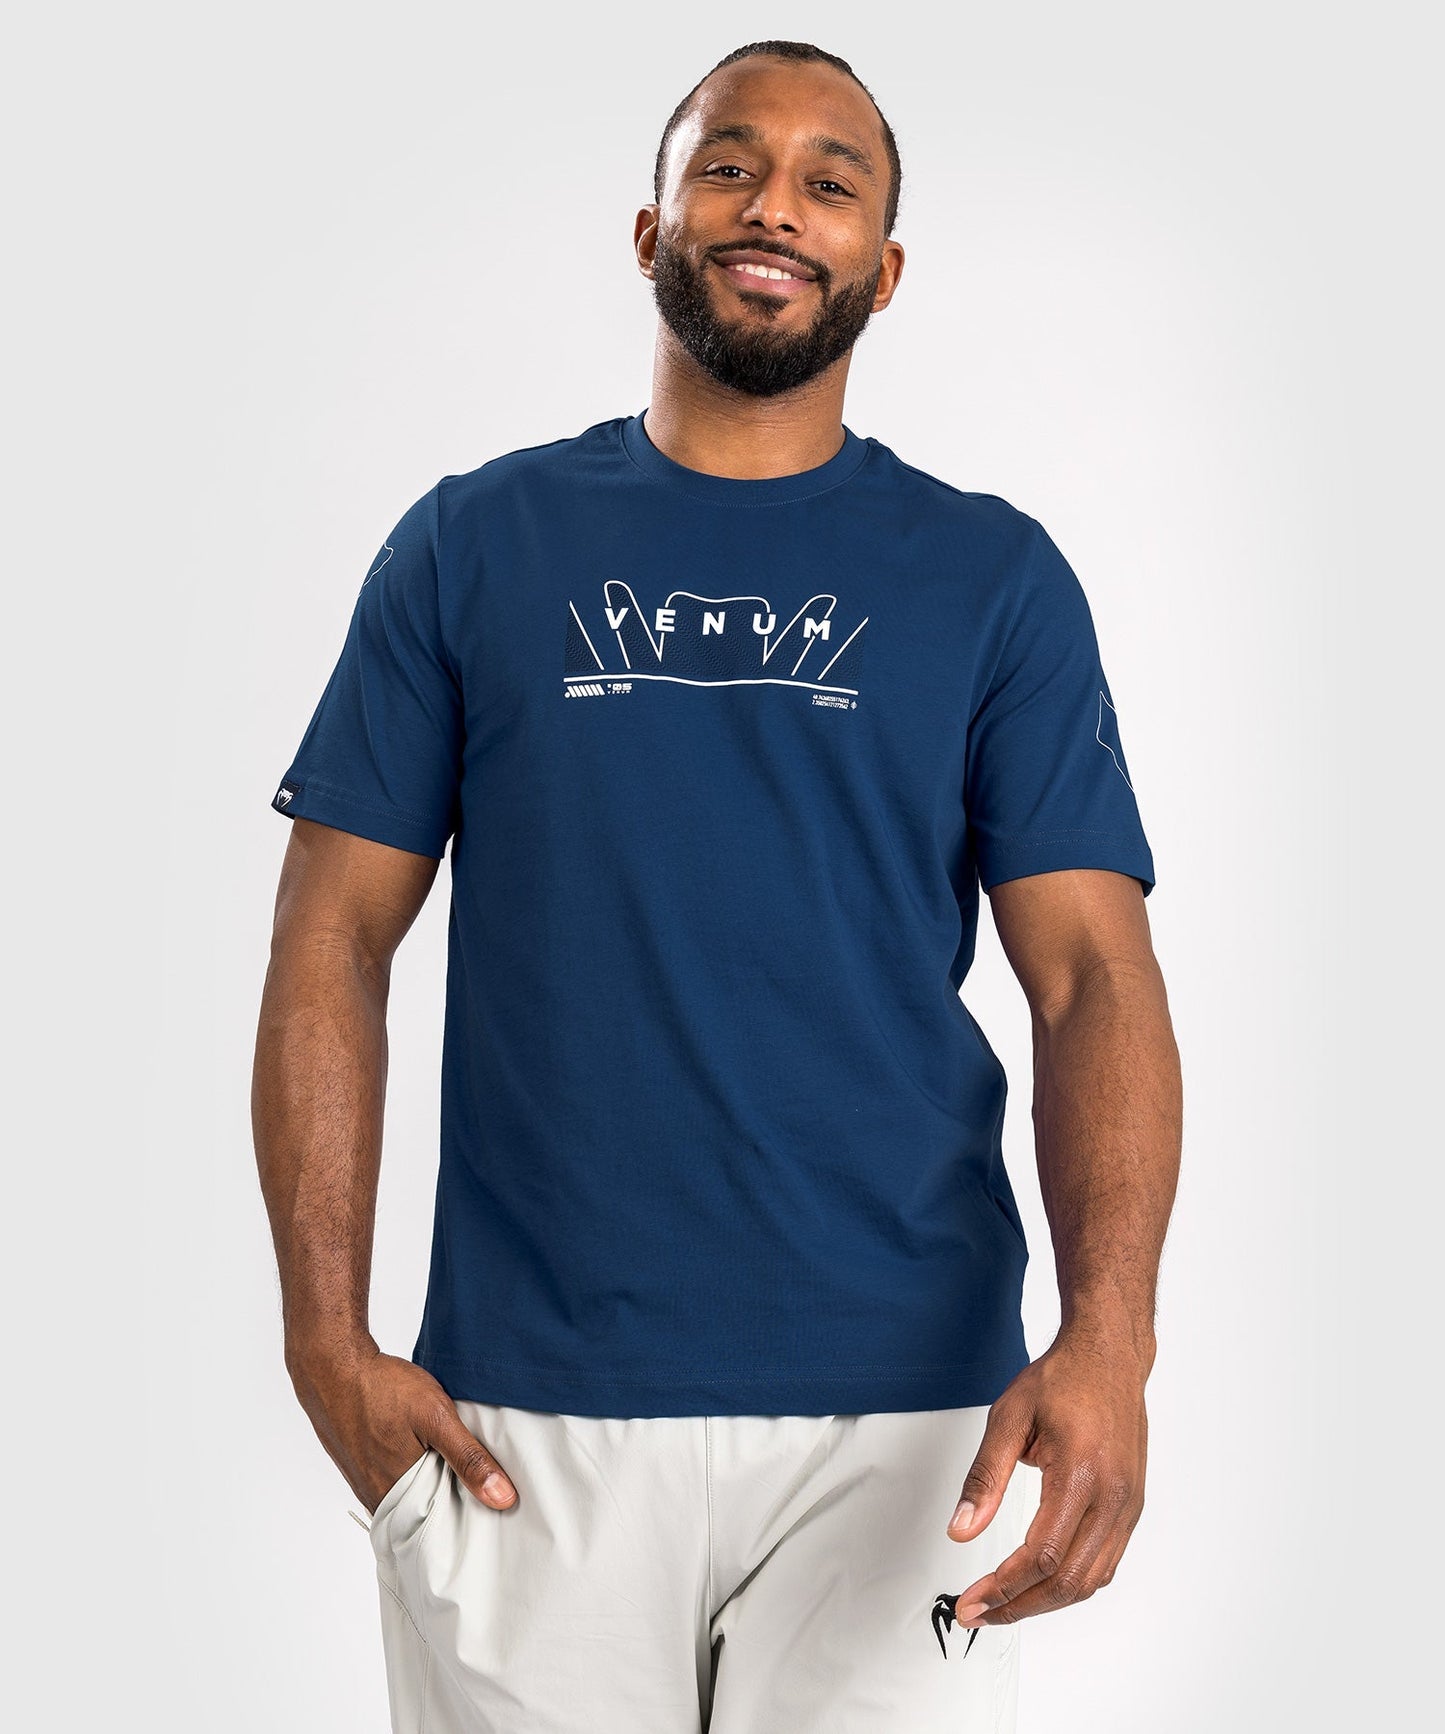 Venum Snake Print T-Shirt - Marineblau